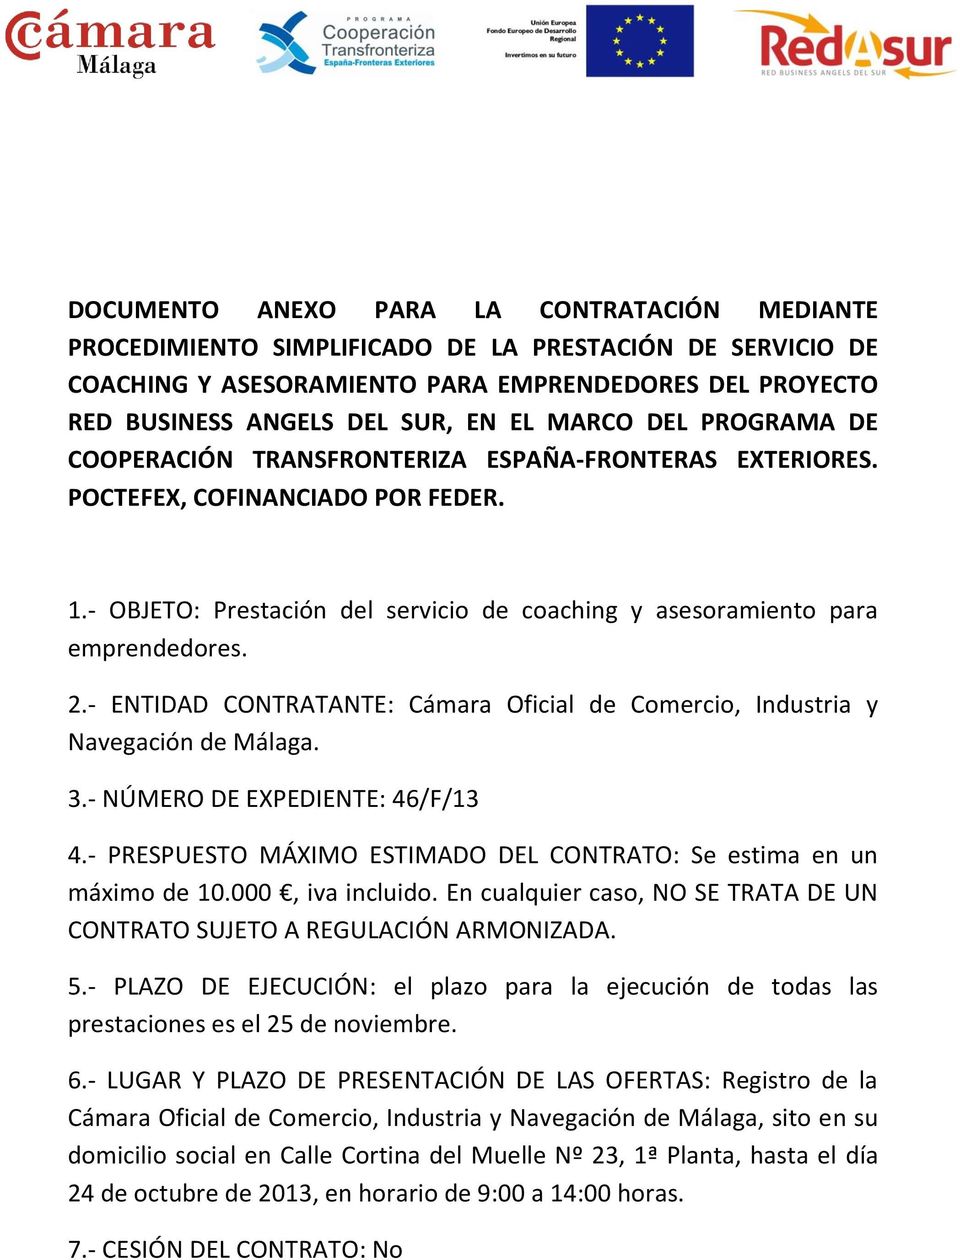 - ENTIDAD CONTRATANTE: Cámara Oficial de Comercio, Industria y Navegación de Málaga. 3.- NÚMERO DE EXPEDIENTE: 46/F/13 4.- PRESPUESTO MÁXIMO ESTIMADO DEL CONTRATO: Se estima en un máximo de 10.